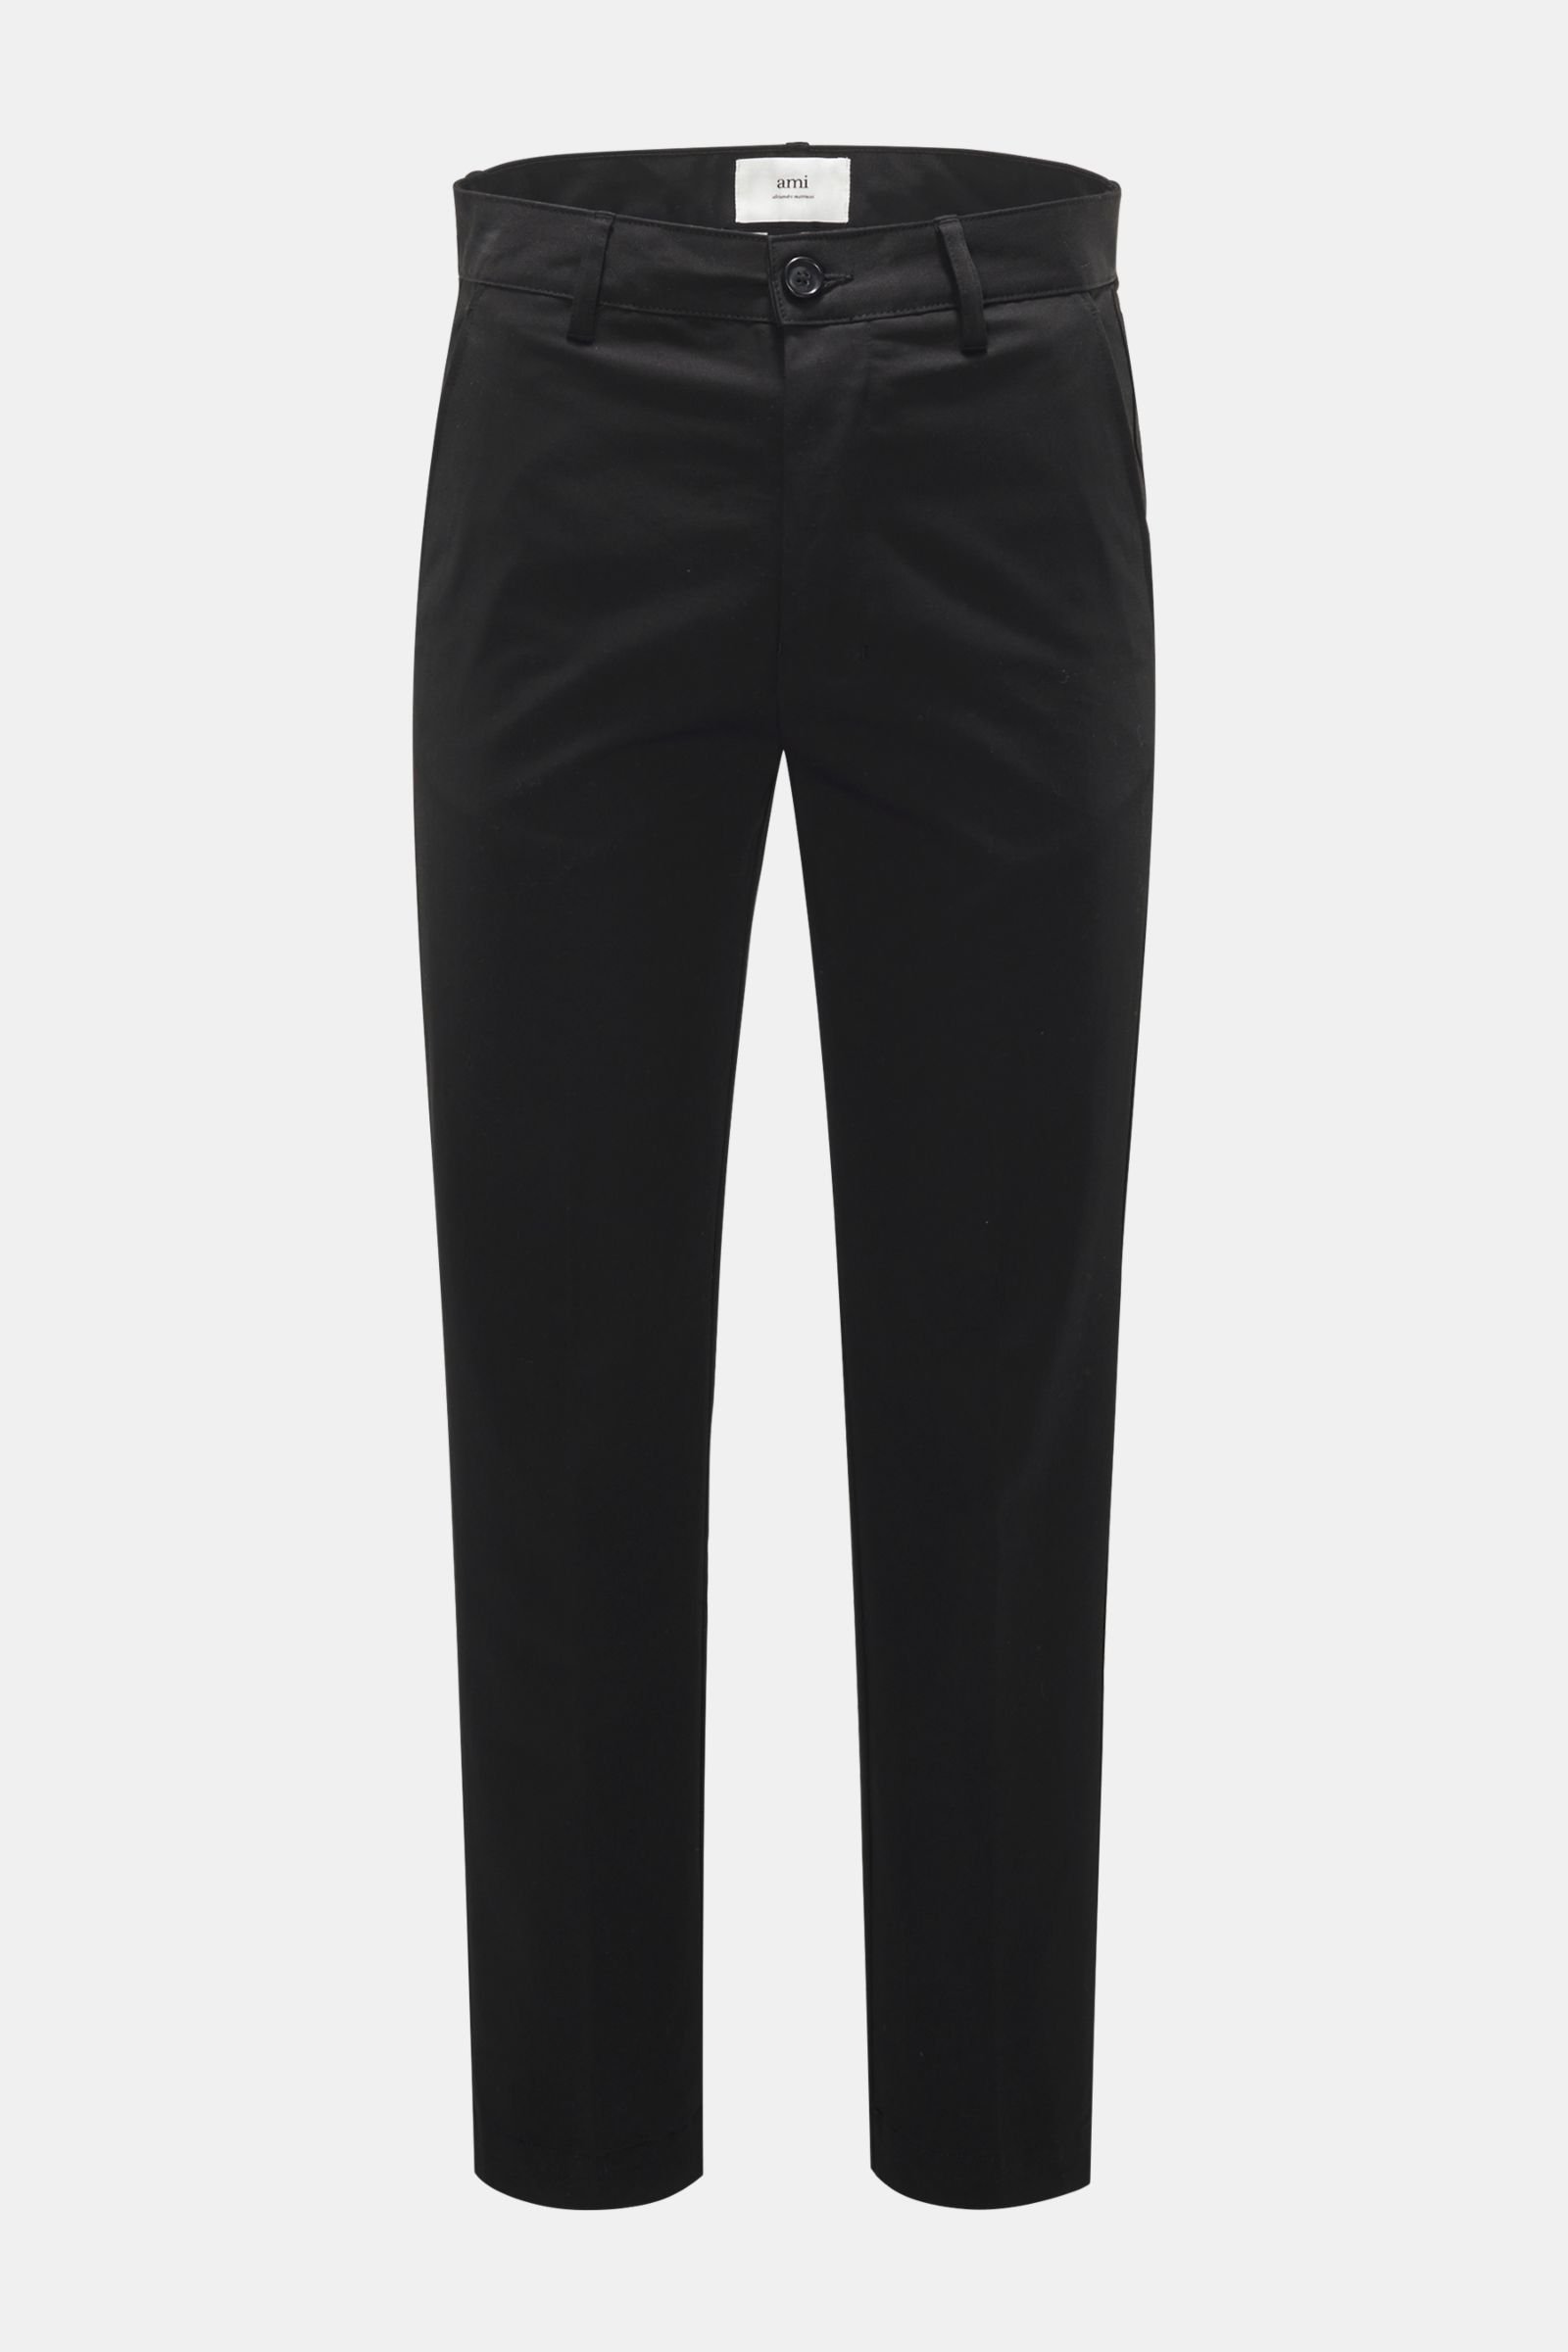 Cotton trousers black